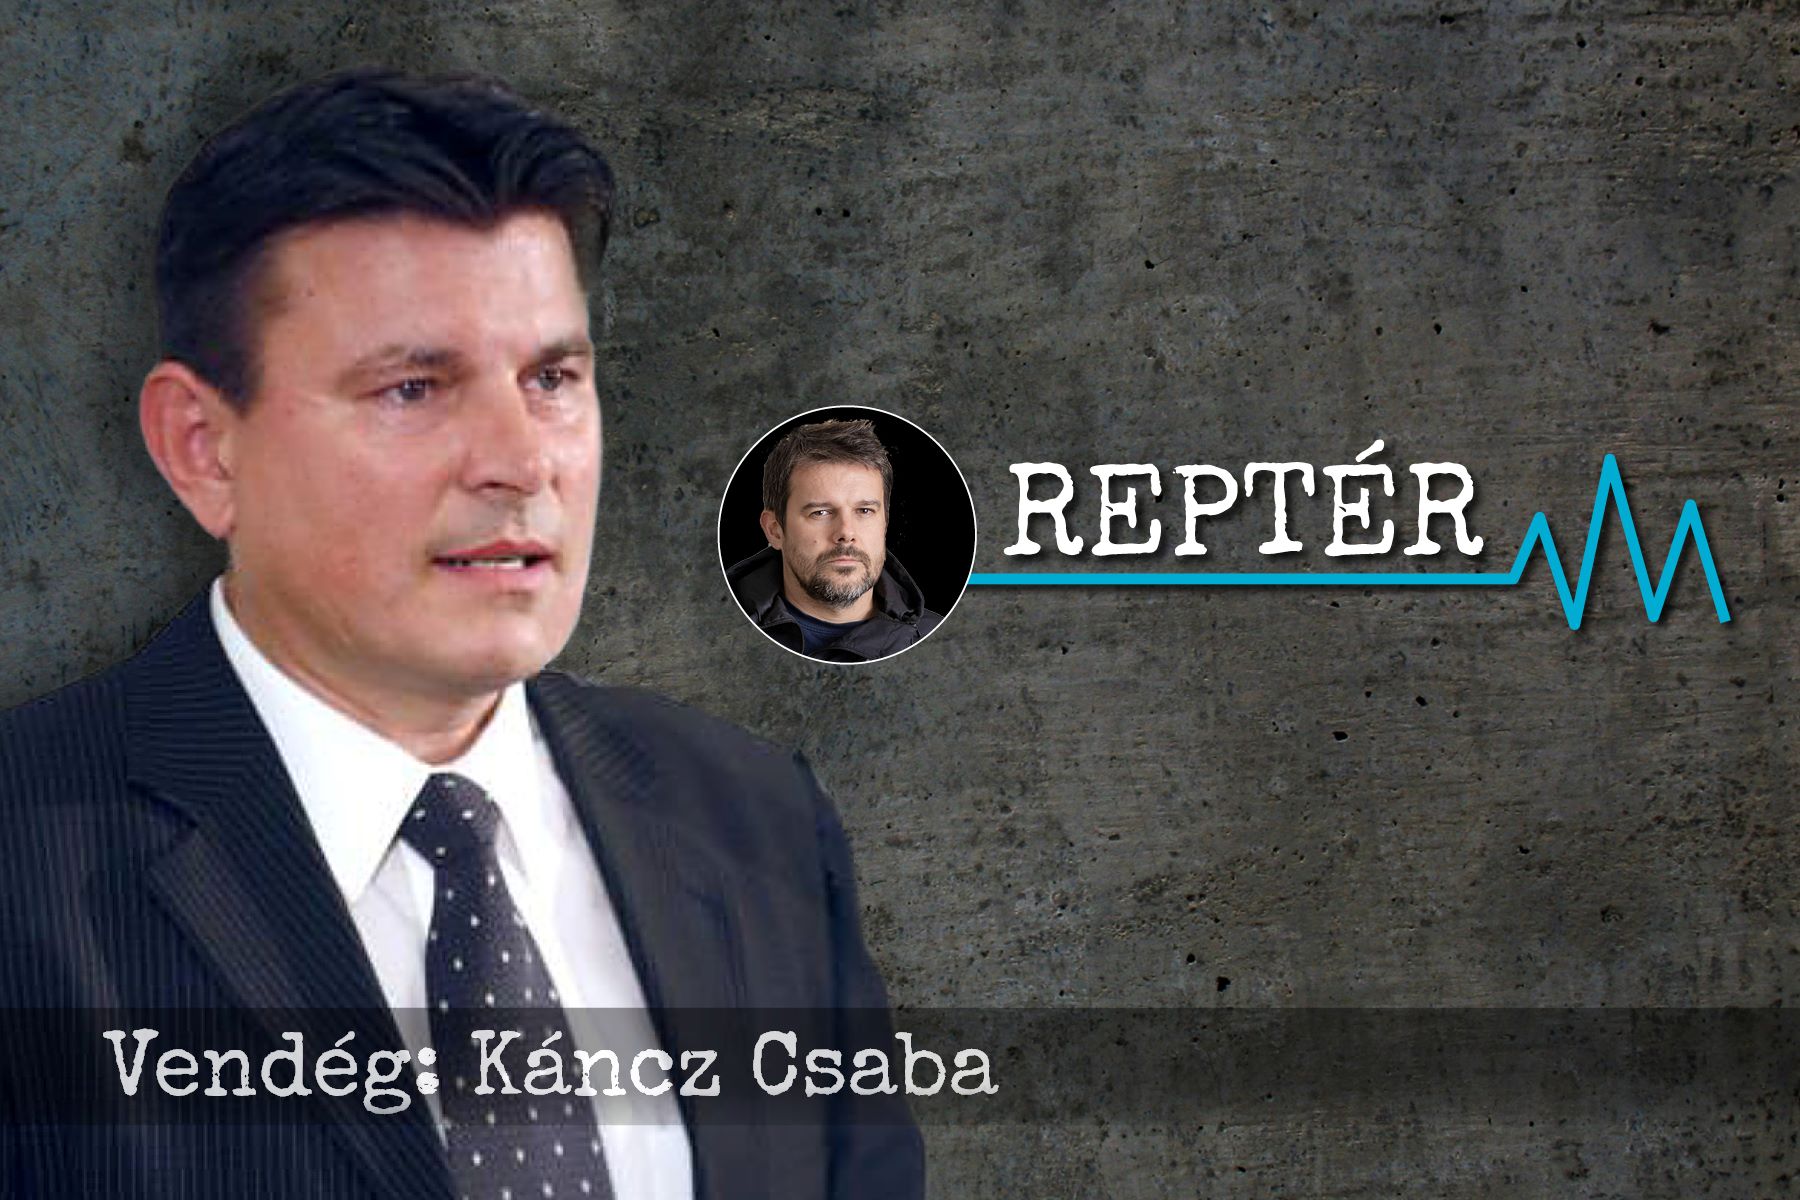 A Fidesz hozzászokott, hogy lefizet másokat, de ez Amerikánál nem jön be – Káncz Csaba a Reptérben